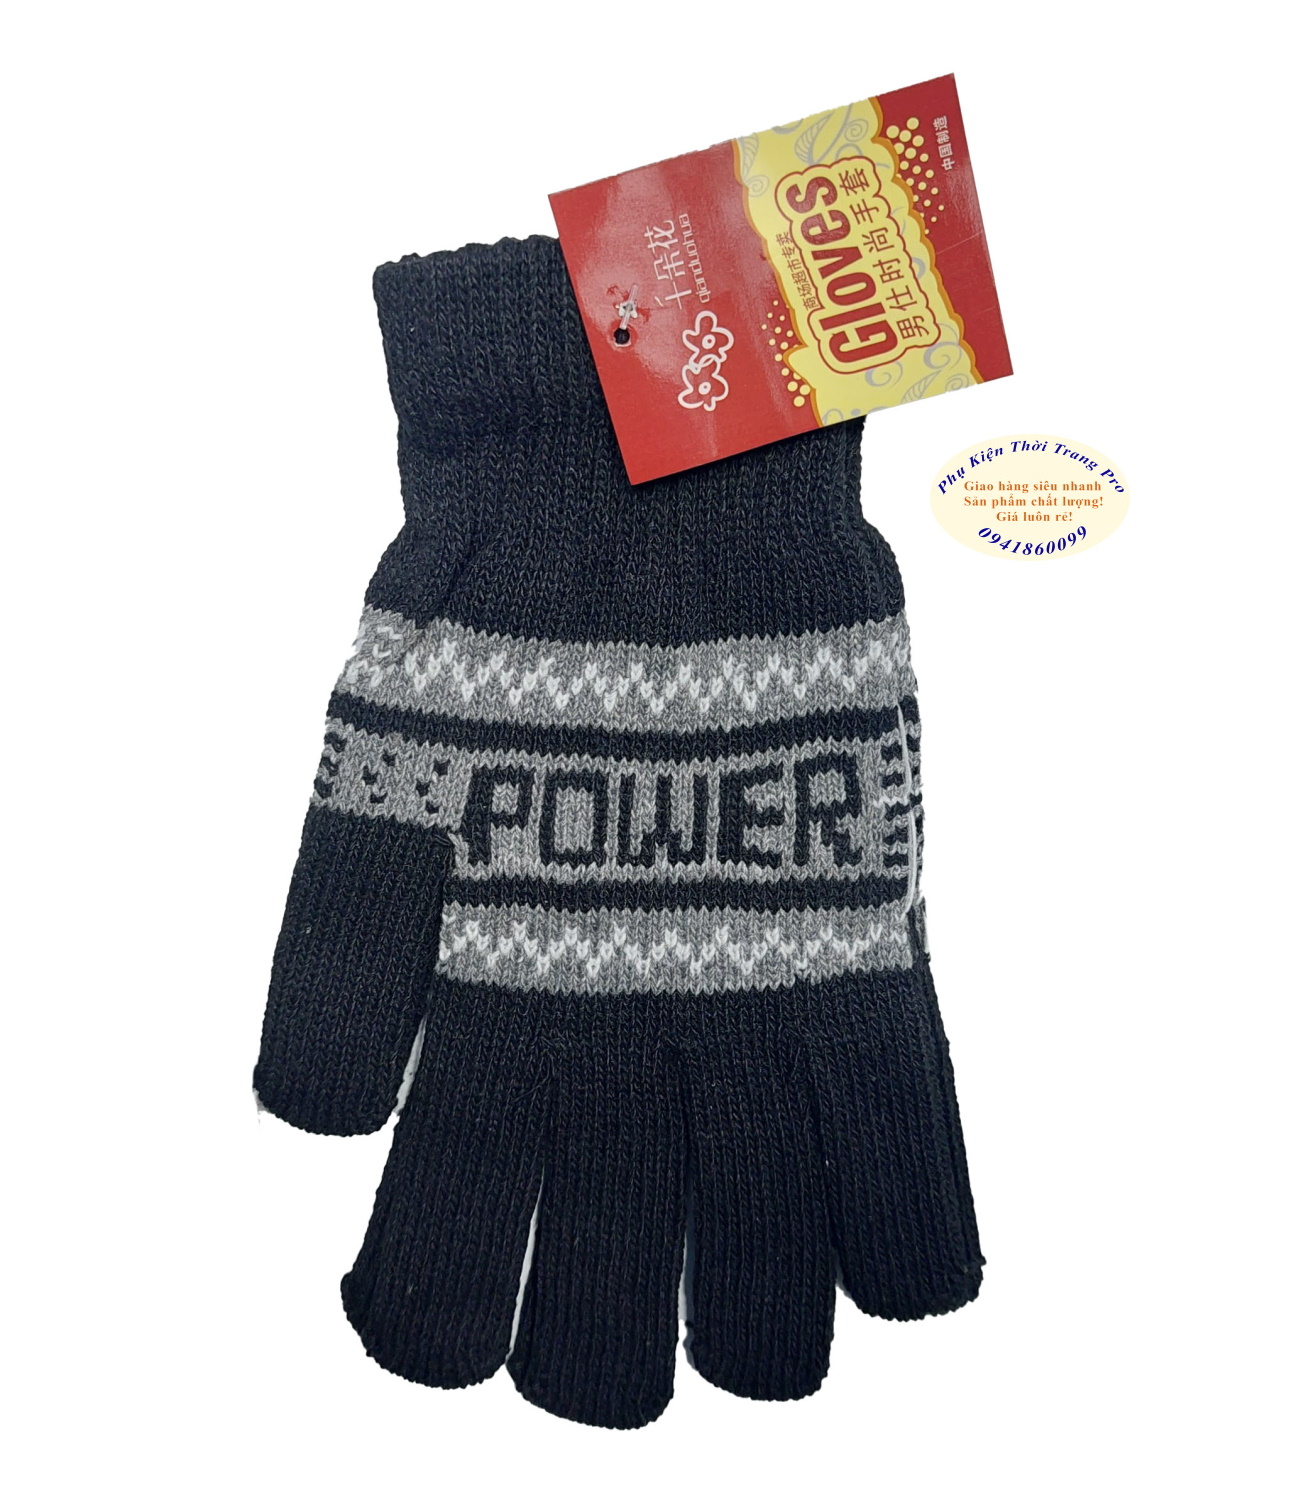 Găng tay len Bao tay len dành cho nam Kiểu bít ngón Hiệu Gloves Chất liệu len co giãn, Chống nắng, Thoải mái khi đeo